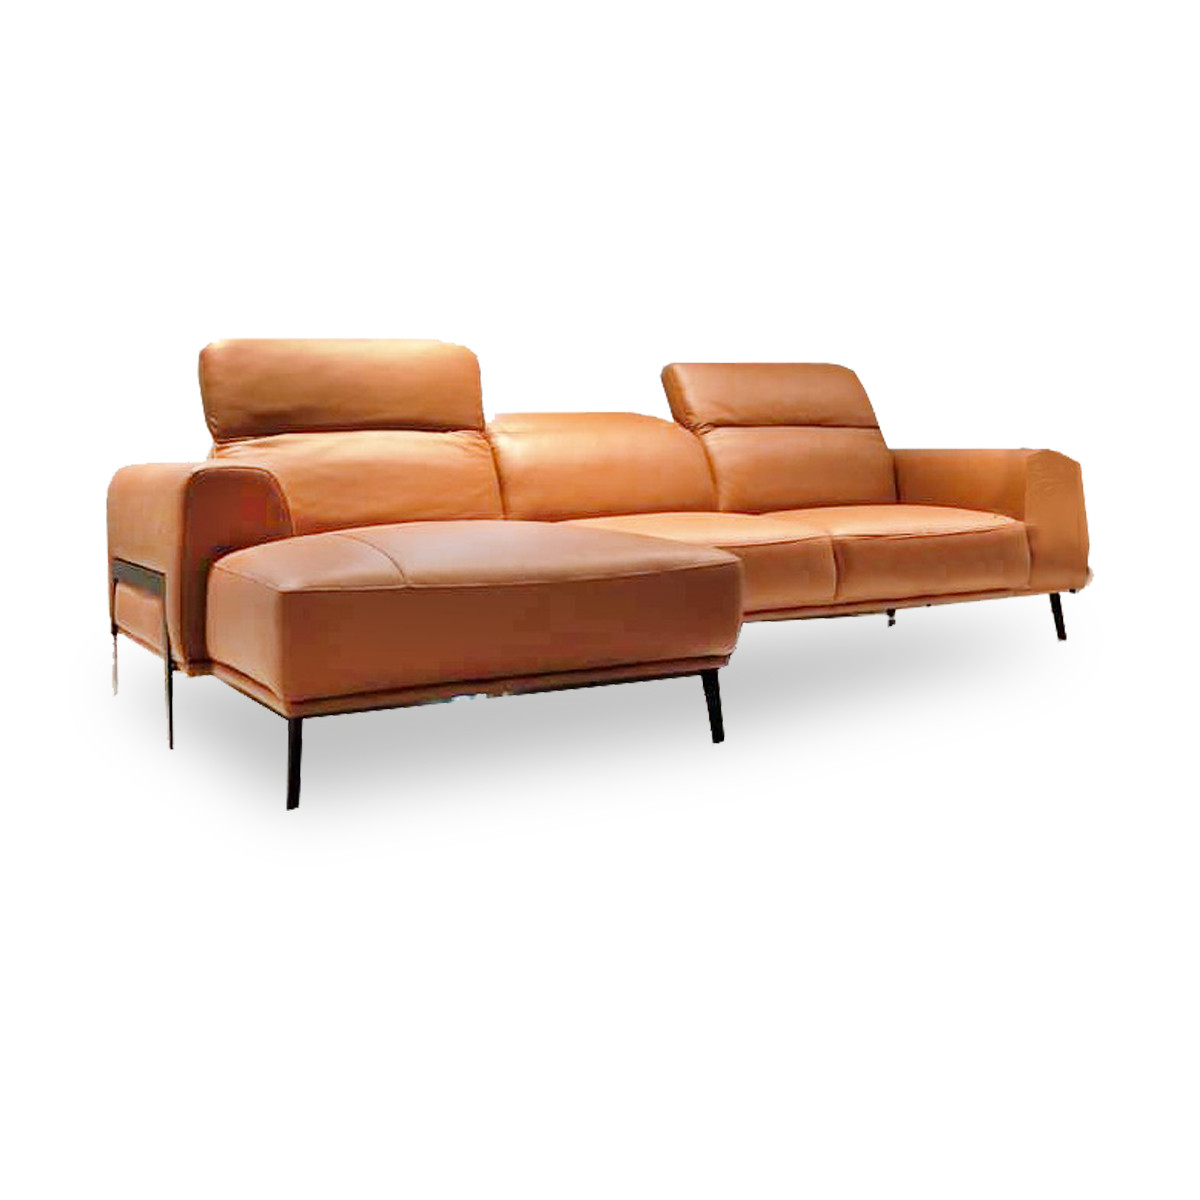 Borge L Shape Sofa 10ft Moredesign Com